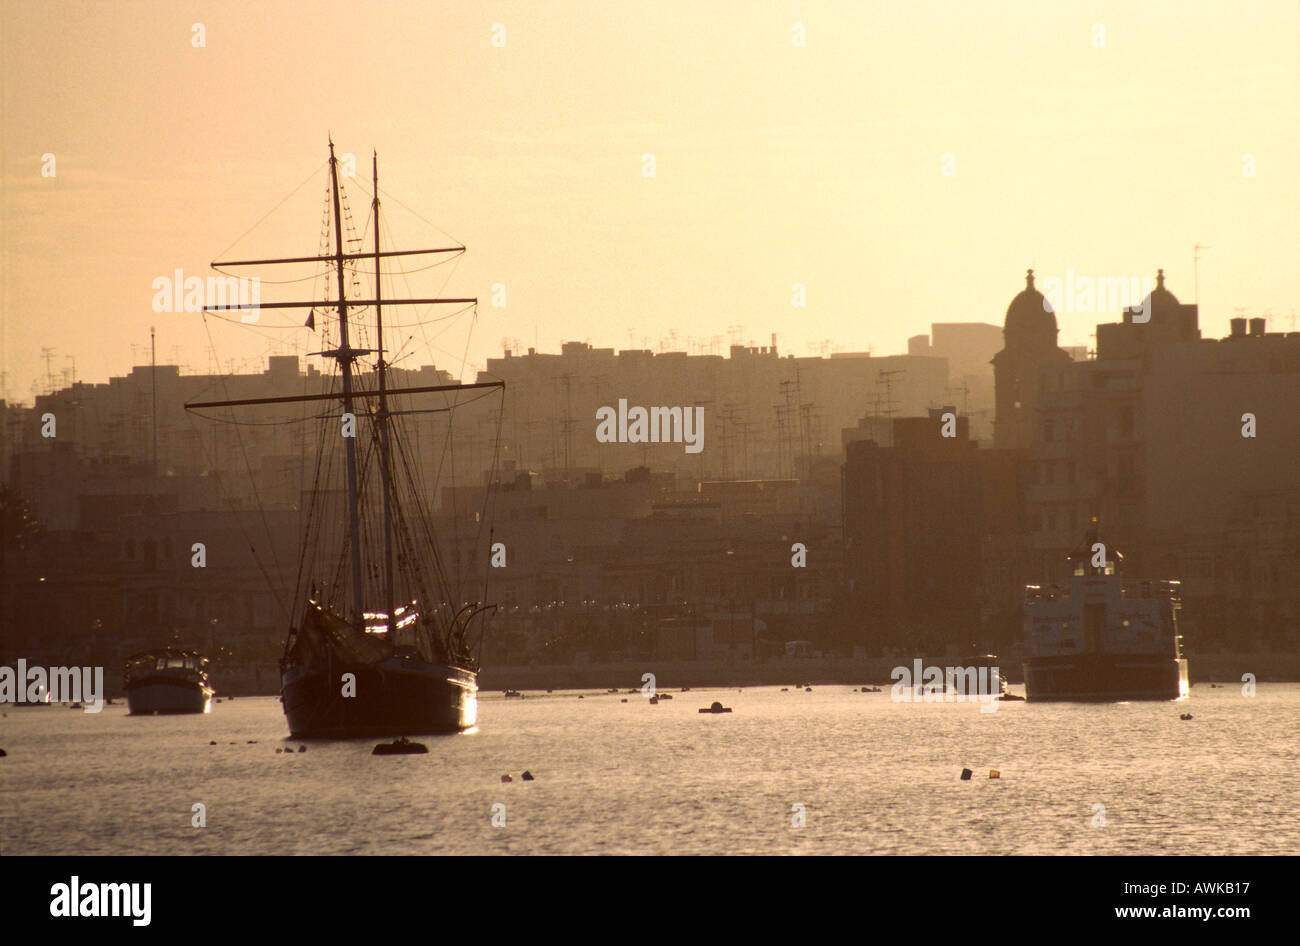 Sailing ship at harbor, Malta Stock Photo